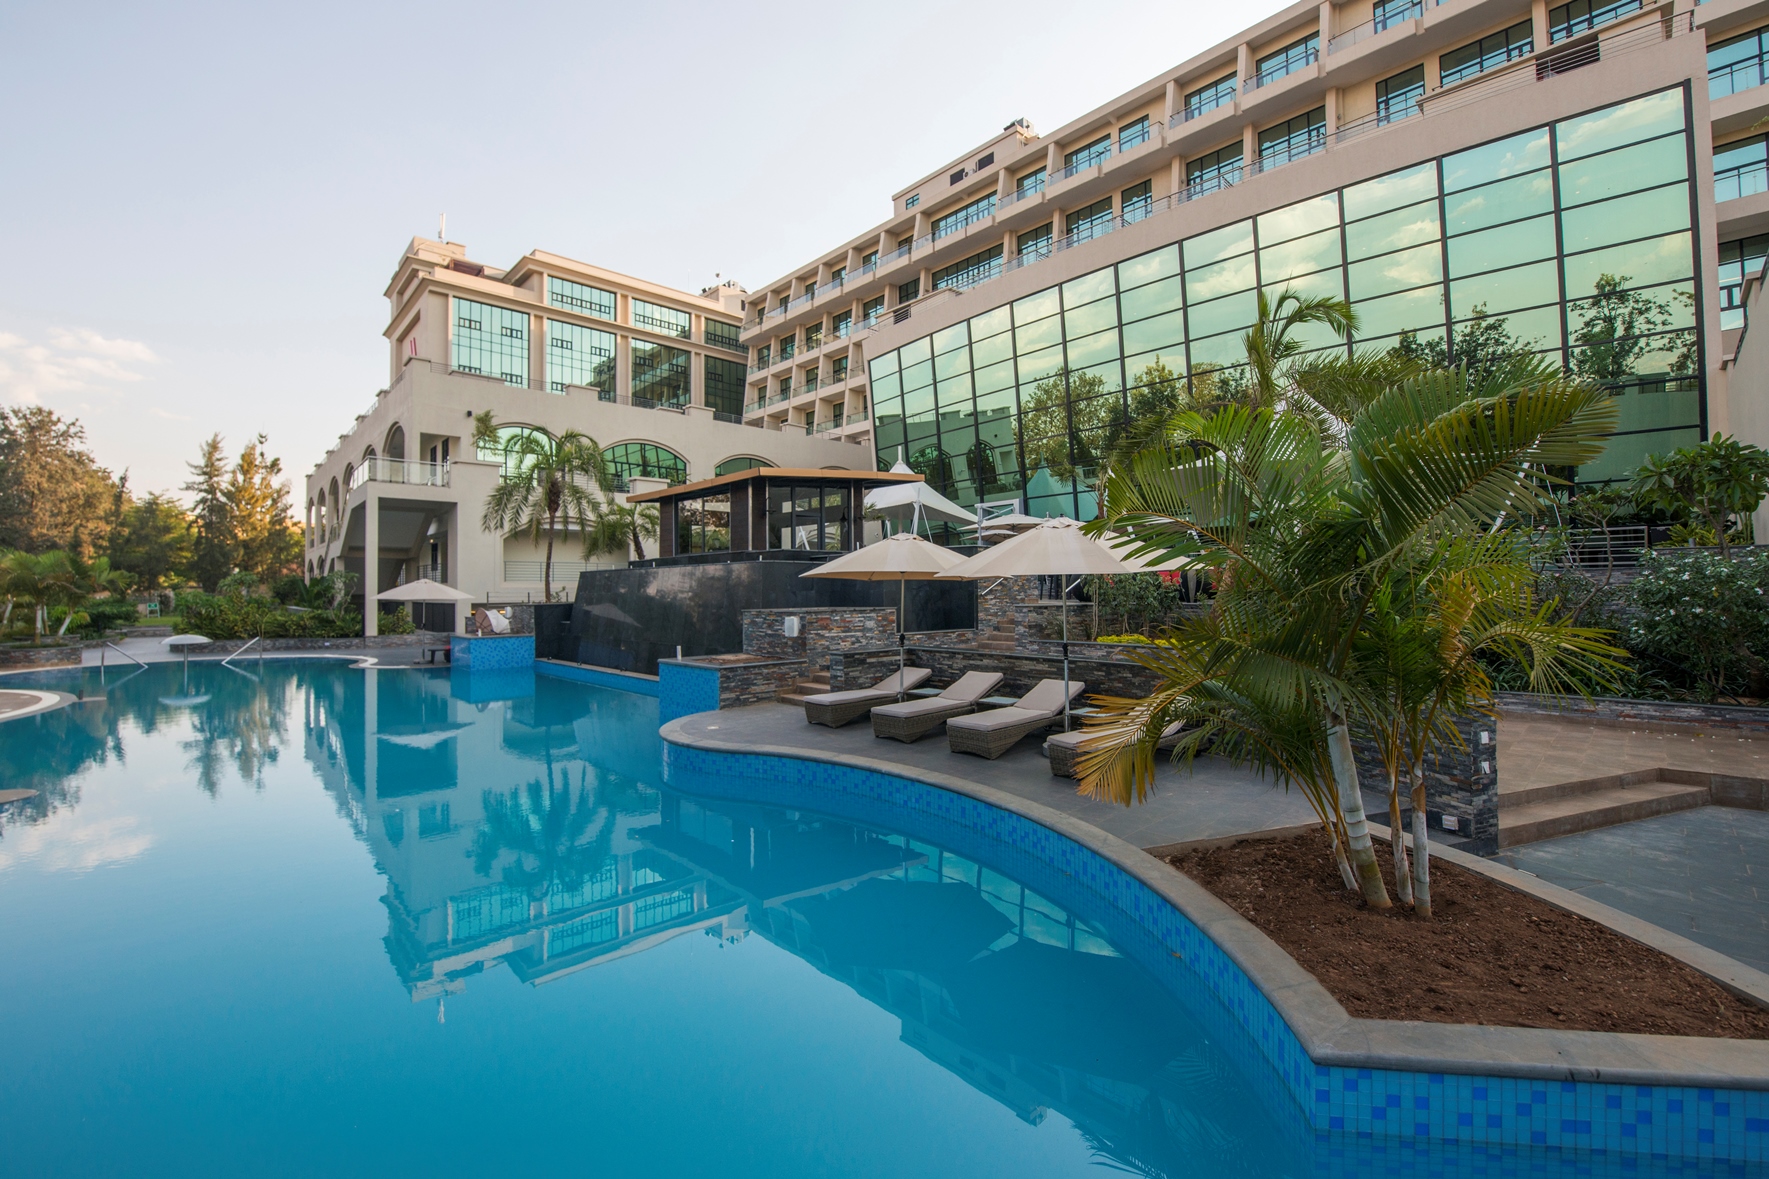 Kigali Marriott Hotel pool